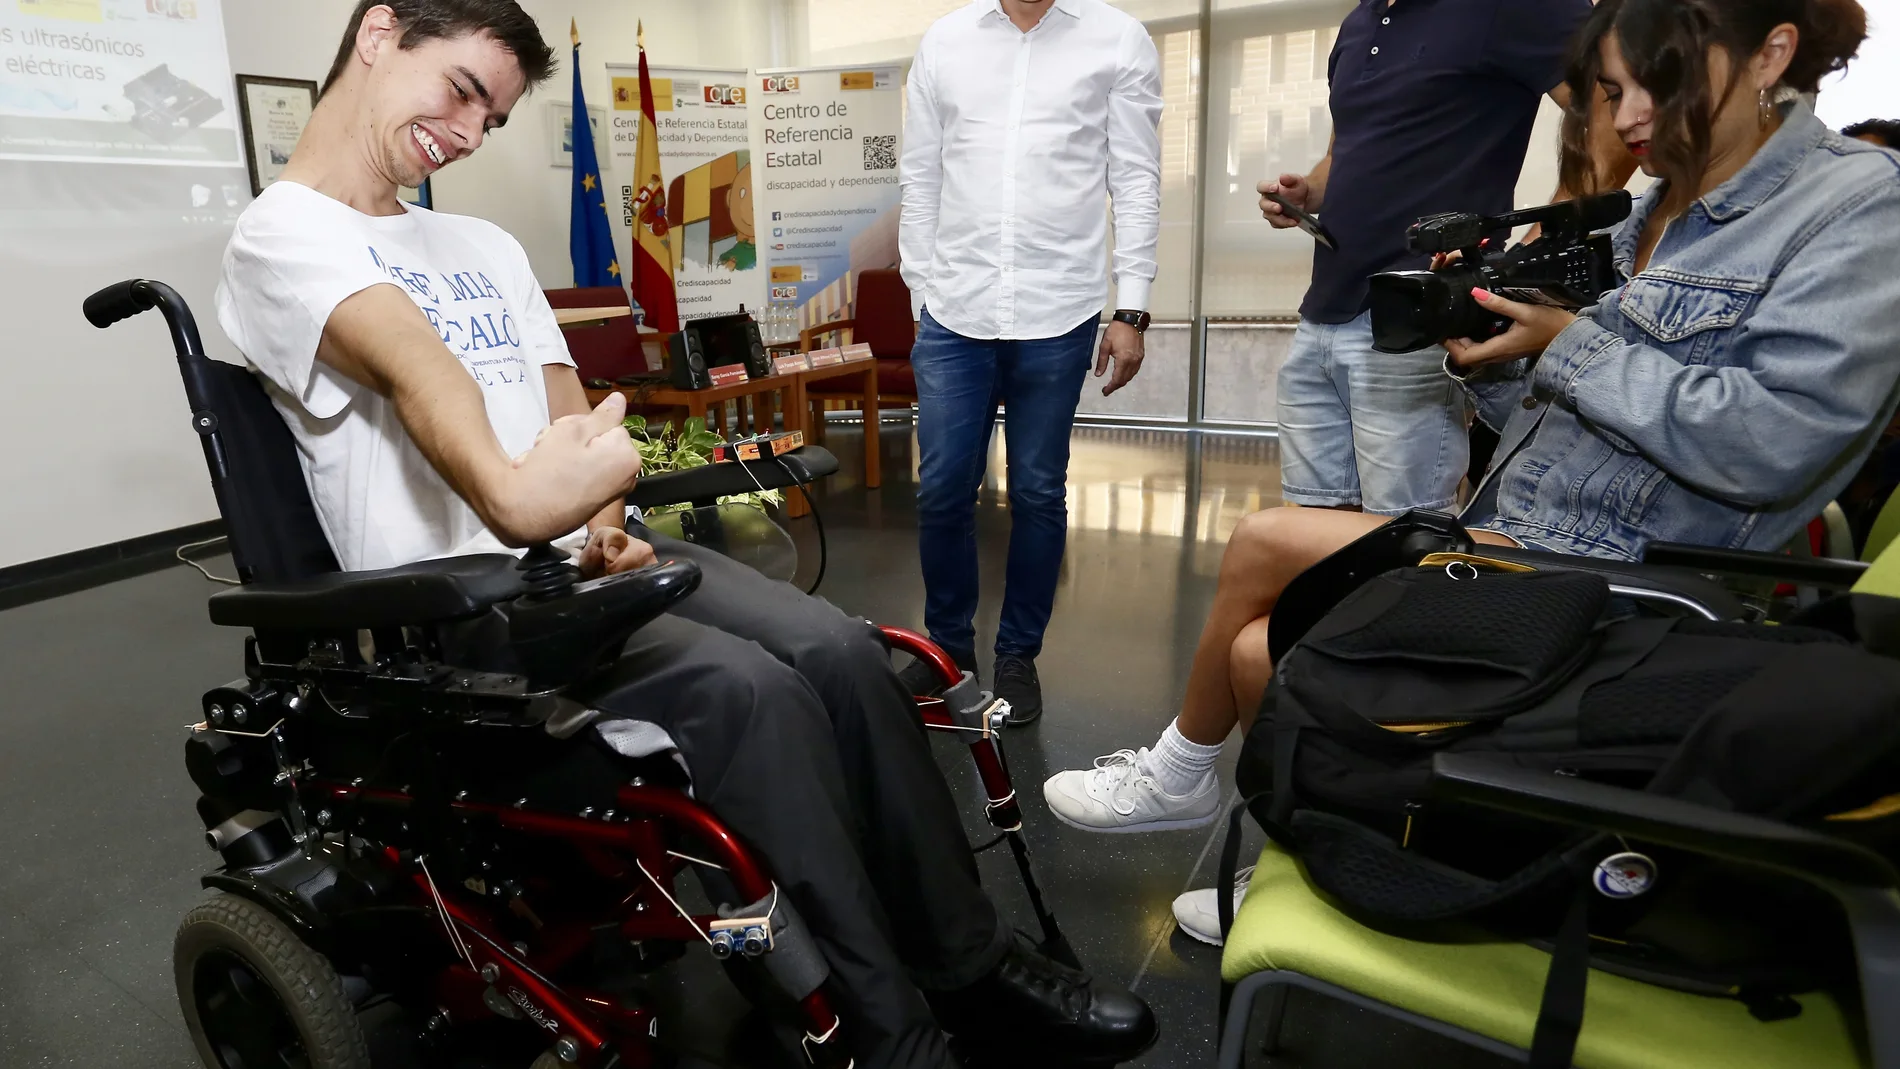 Jornada en el CRE de San Andres del Rabanedo (León) sobre sensores para sillas de ruedas, en la que se presenta un estudio sobre la dificultad que tienen las personas con discapacidad que se encuentran en silla de ruedas